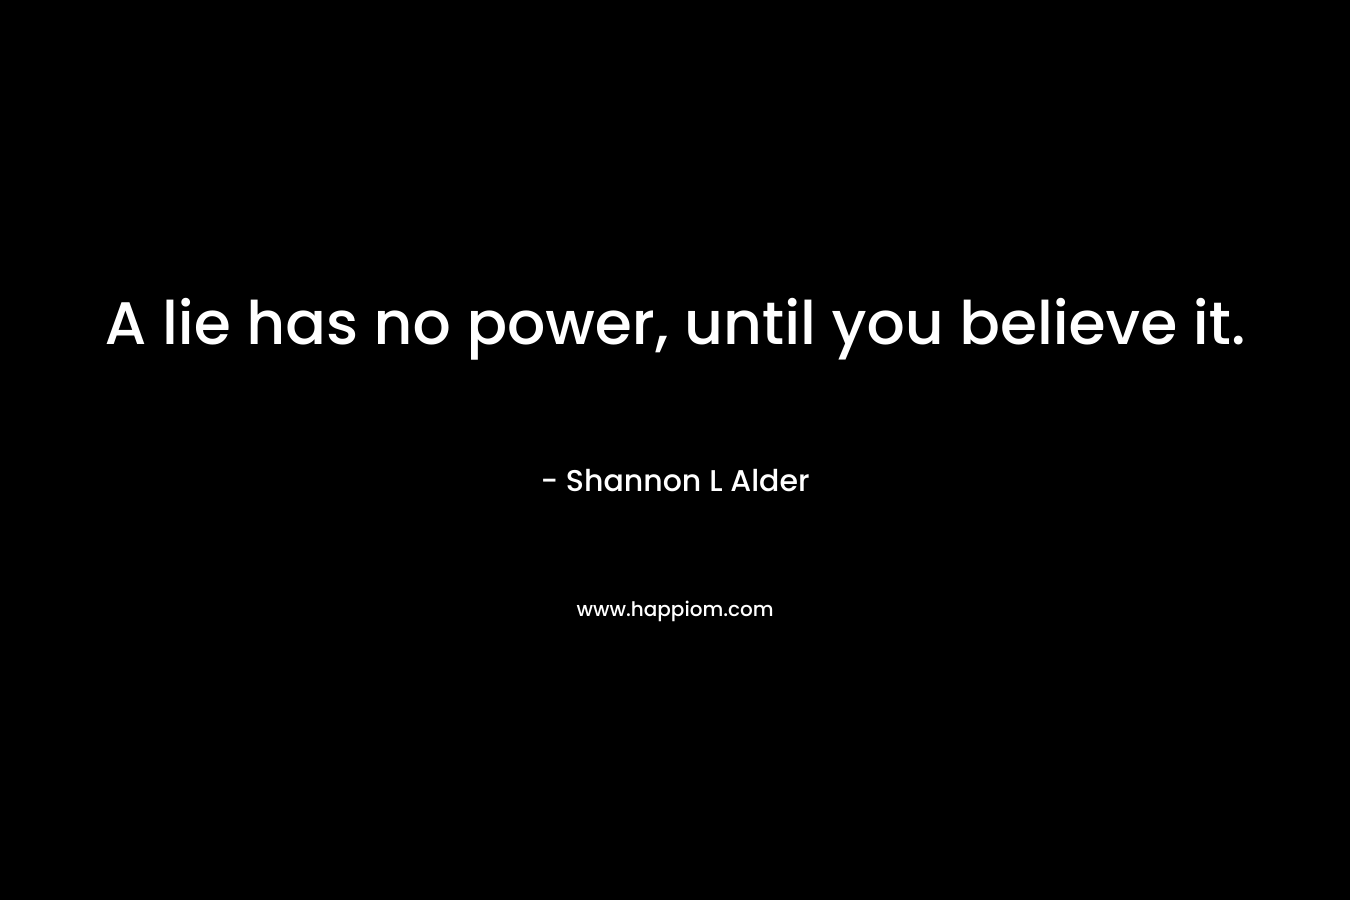 A lie has no power, until you believe it.